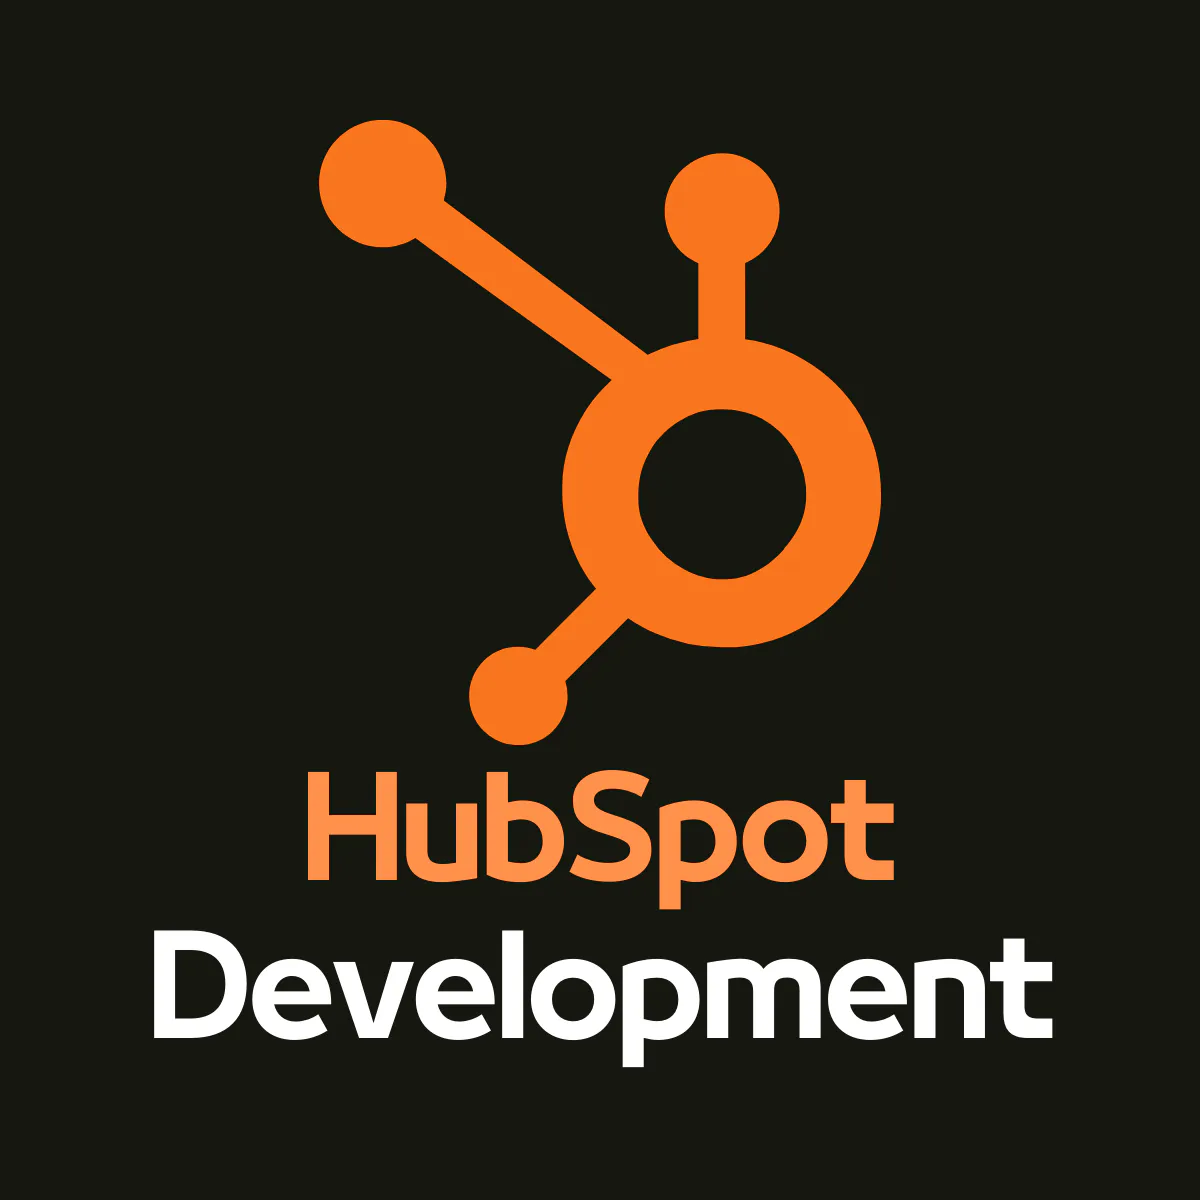 HubSpot Development